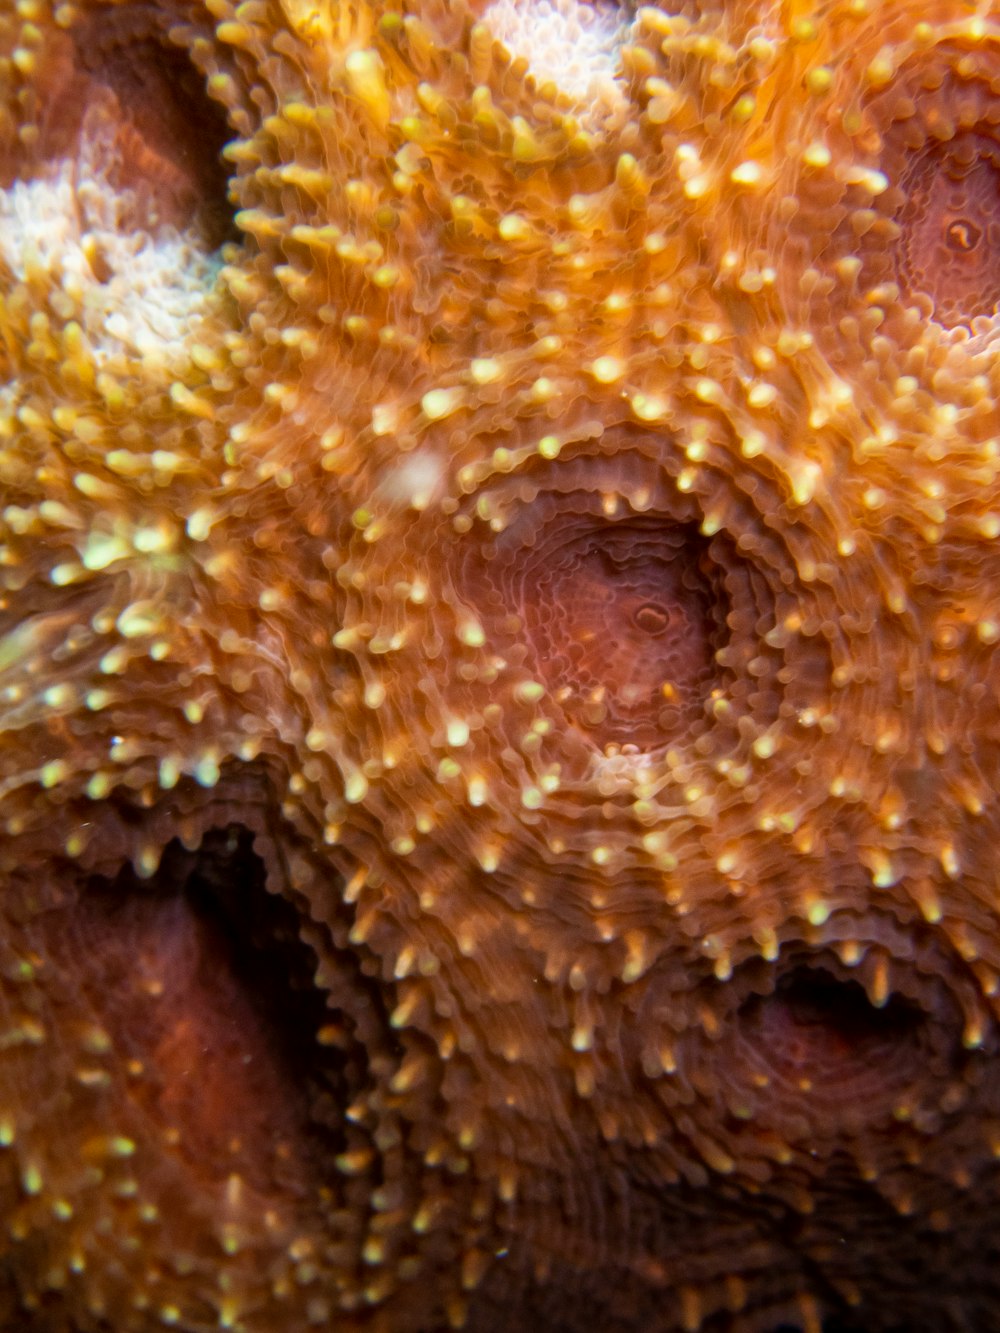 um close up de um coral com pequenos pontos amarelos